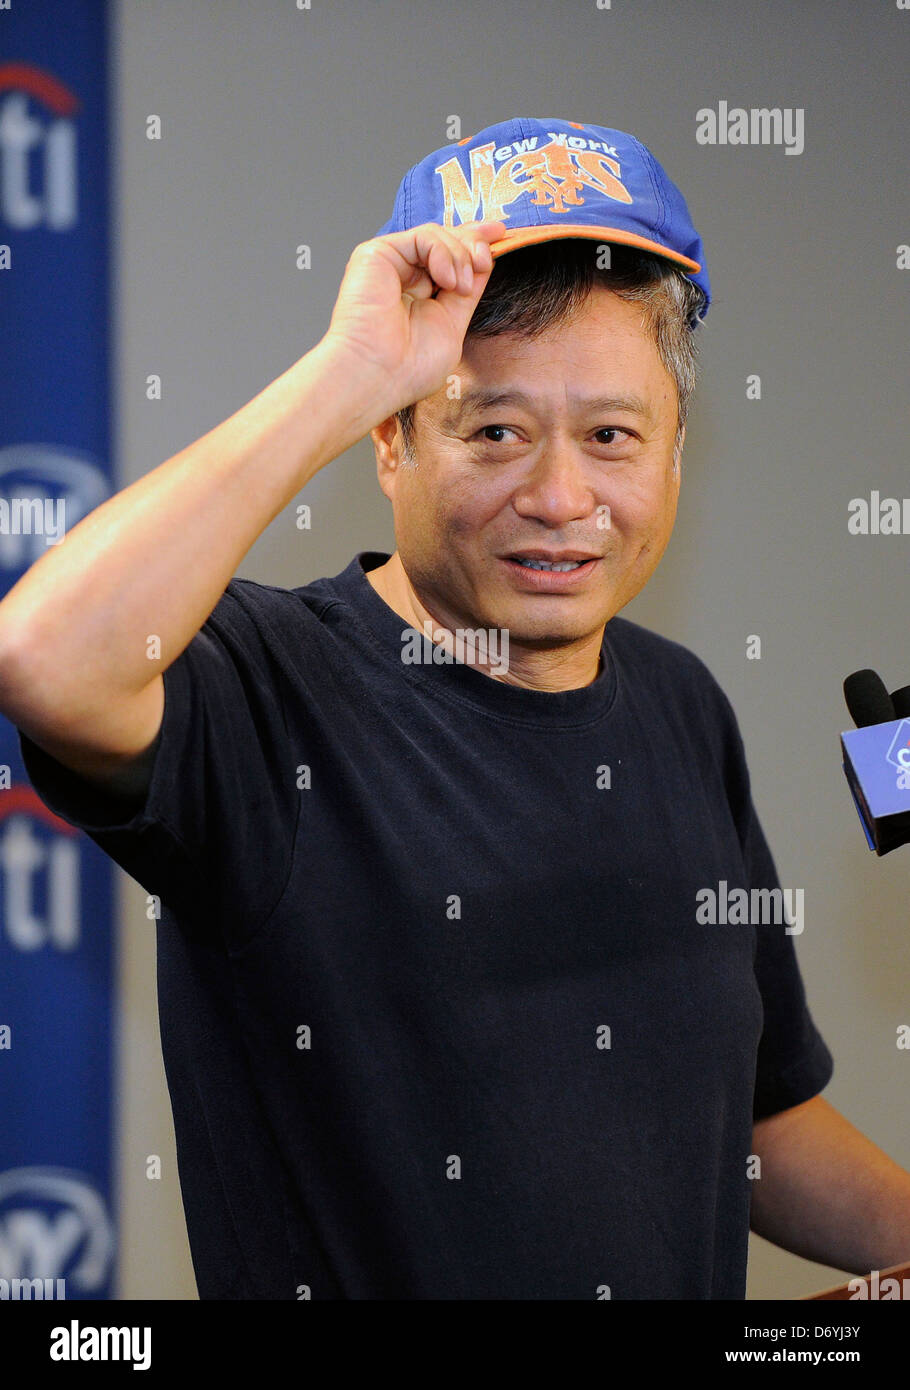 El director Ang Lee asiste a una conferencia de prensa en el Citi Field, donde va a lanzar la primera bola en la noche en el estadio de béisbol de Taiwán el 12 de septiembre, 2011. Queens, Nueva York - 01.09.11 C Foto de stock